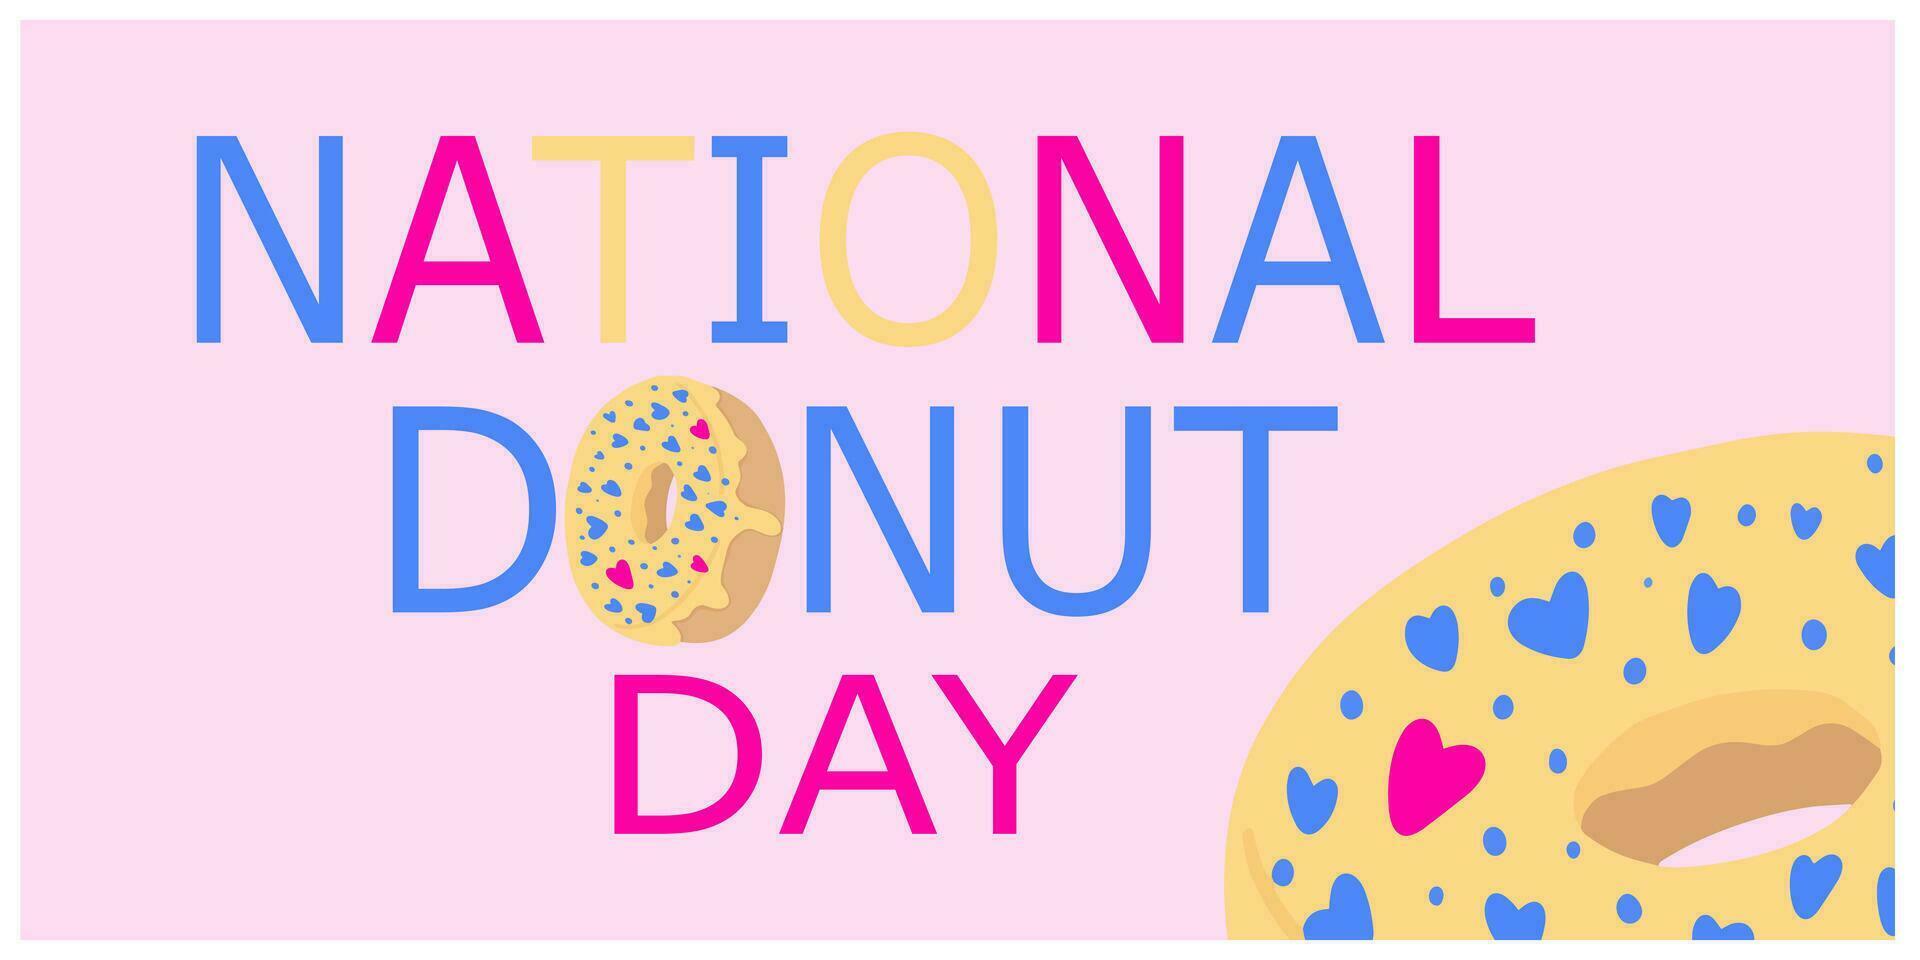 nationale Donut journée caractères avec rose Donut. vecteur illustration. dessin animé